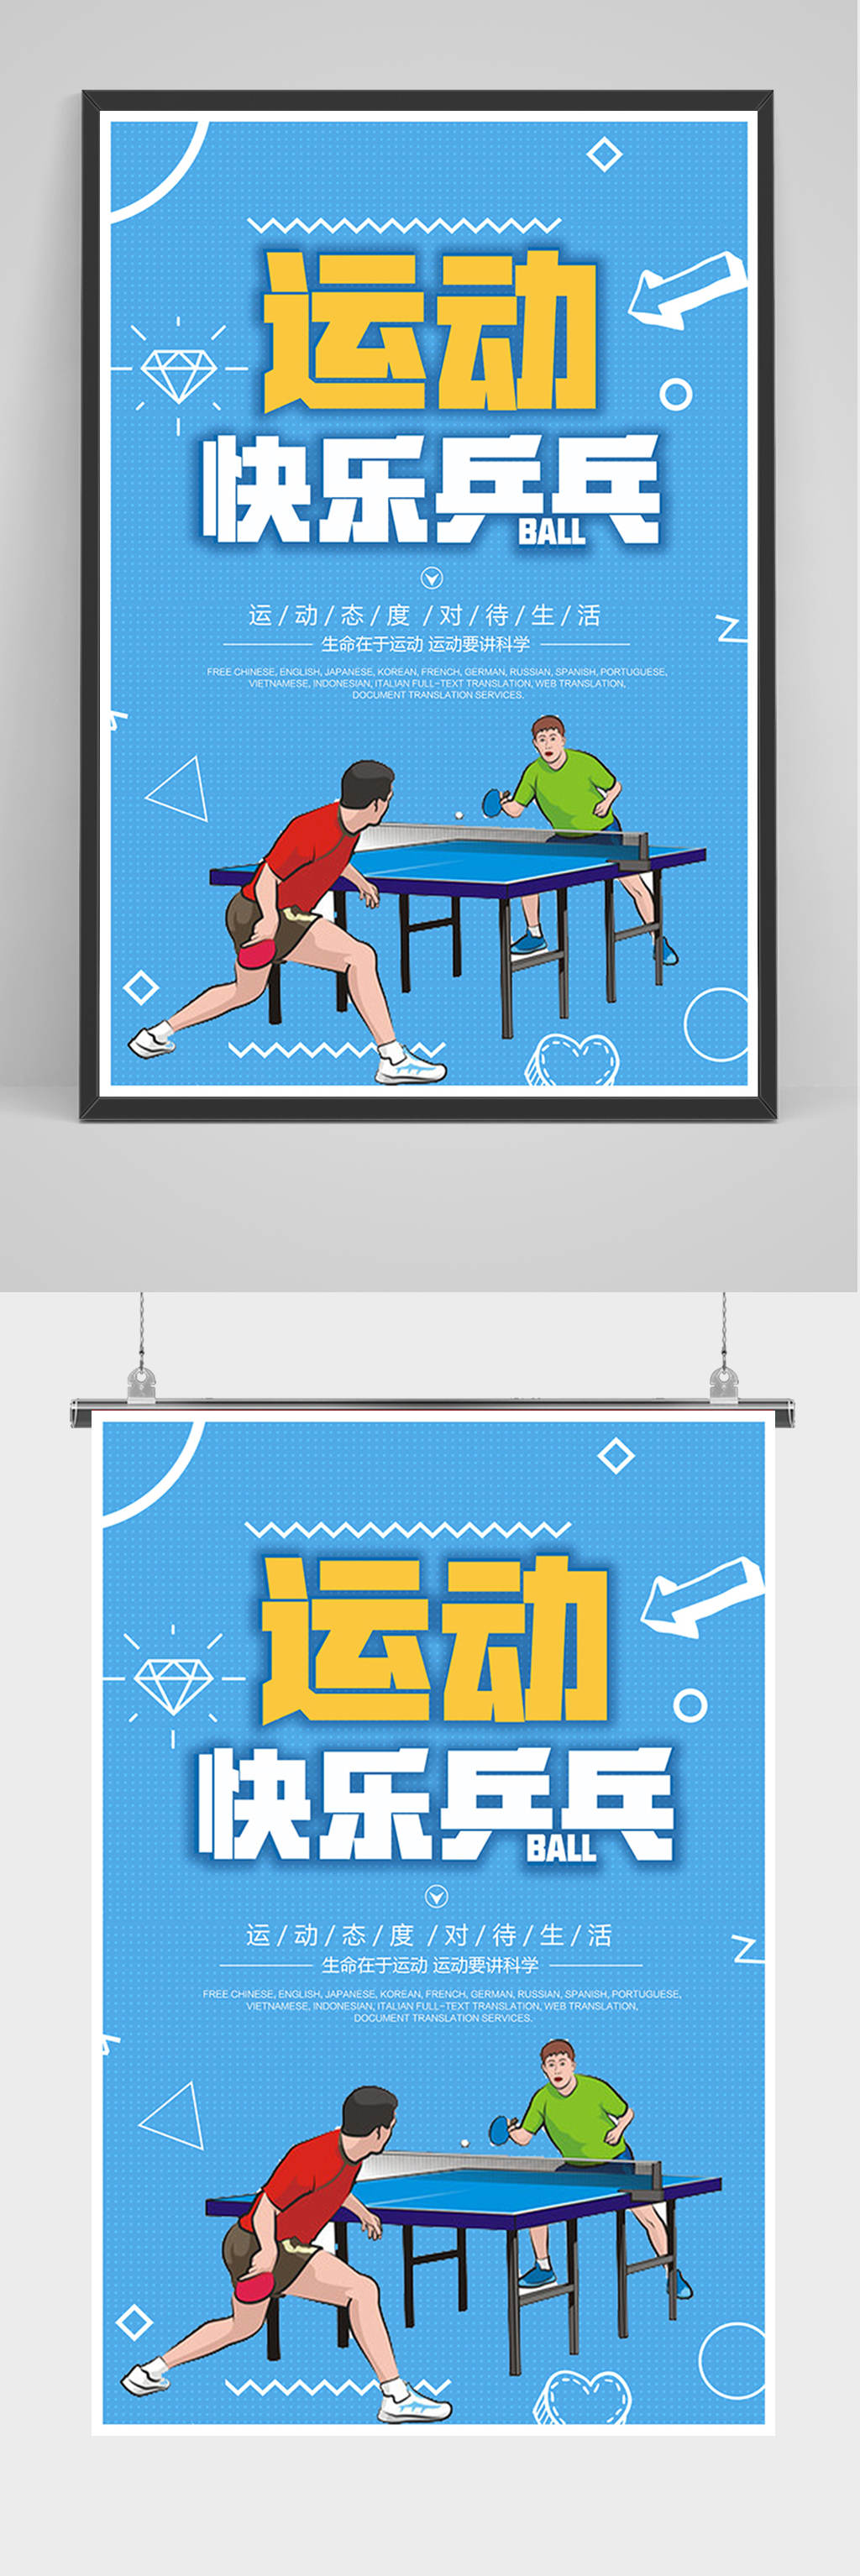 拼搏企业宣传展板海报立即下载蓝色乒乓球大赛海报立即下载拼搏企业